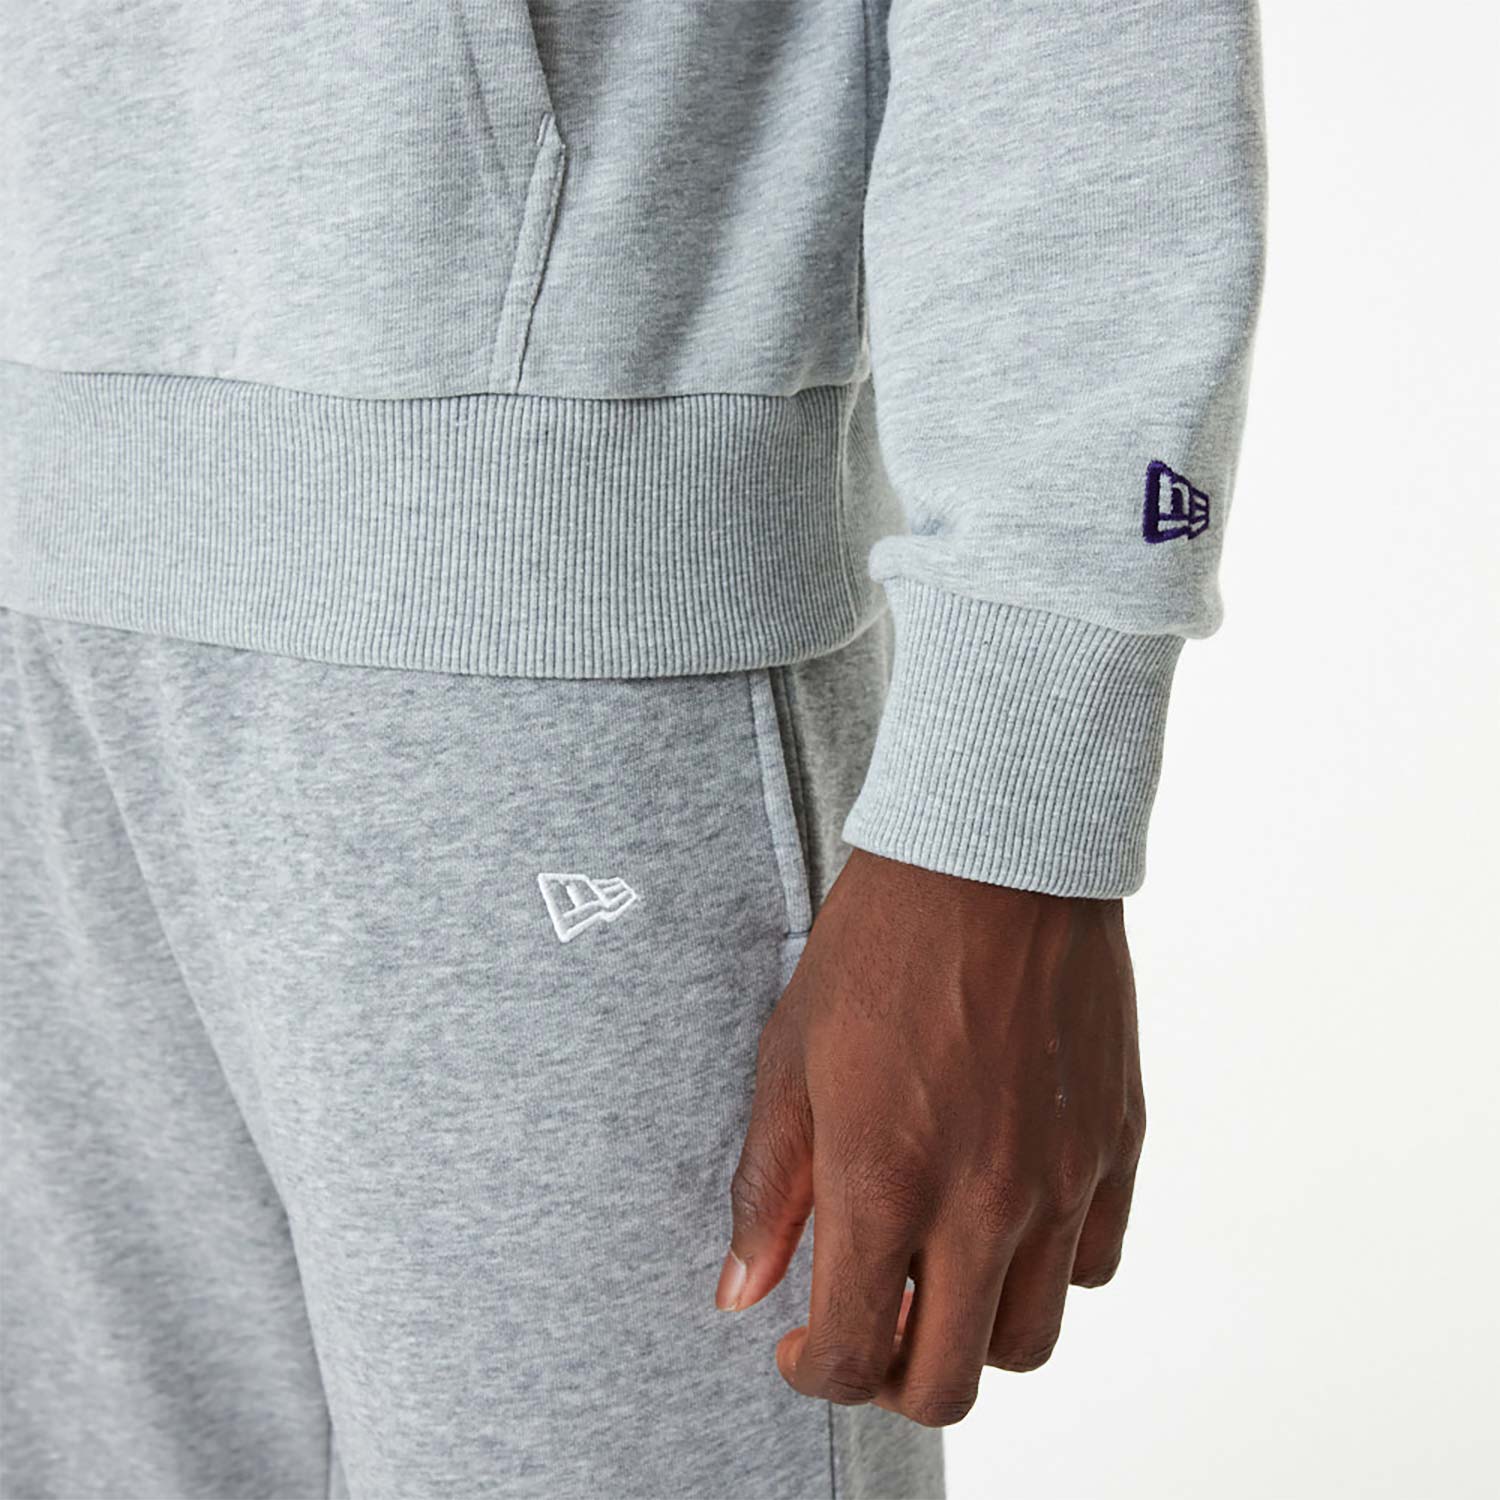 LA Lakers NBA Team Logo Grey Pullover Hoodie